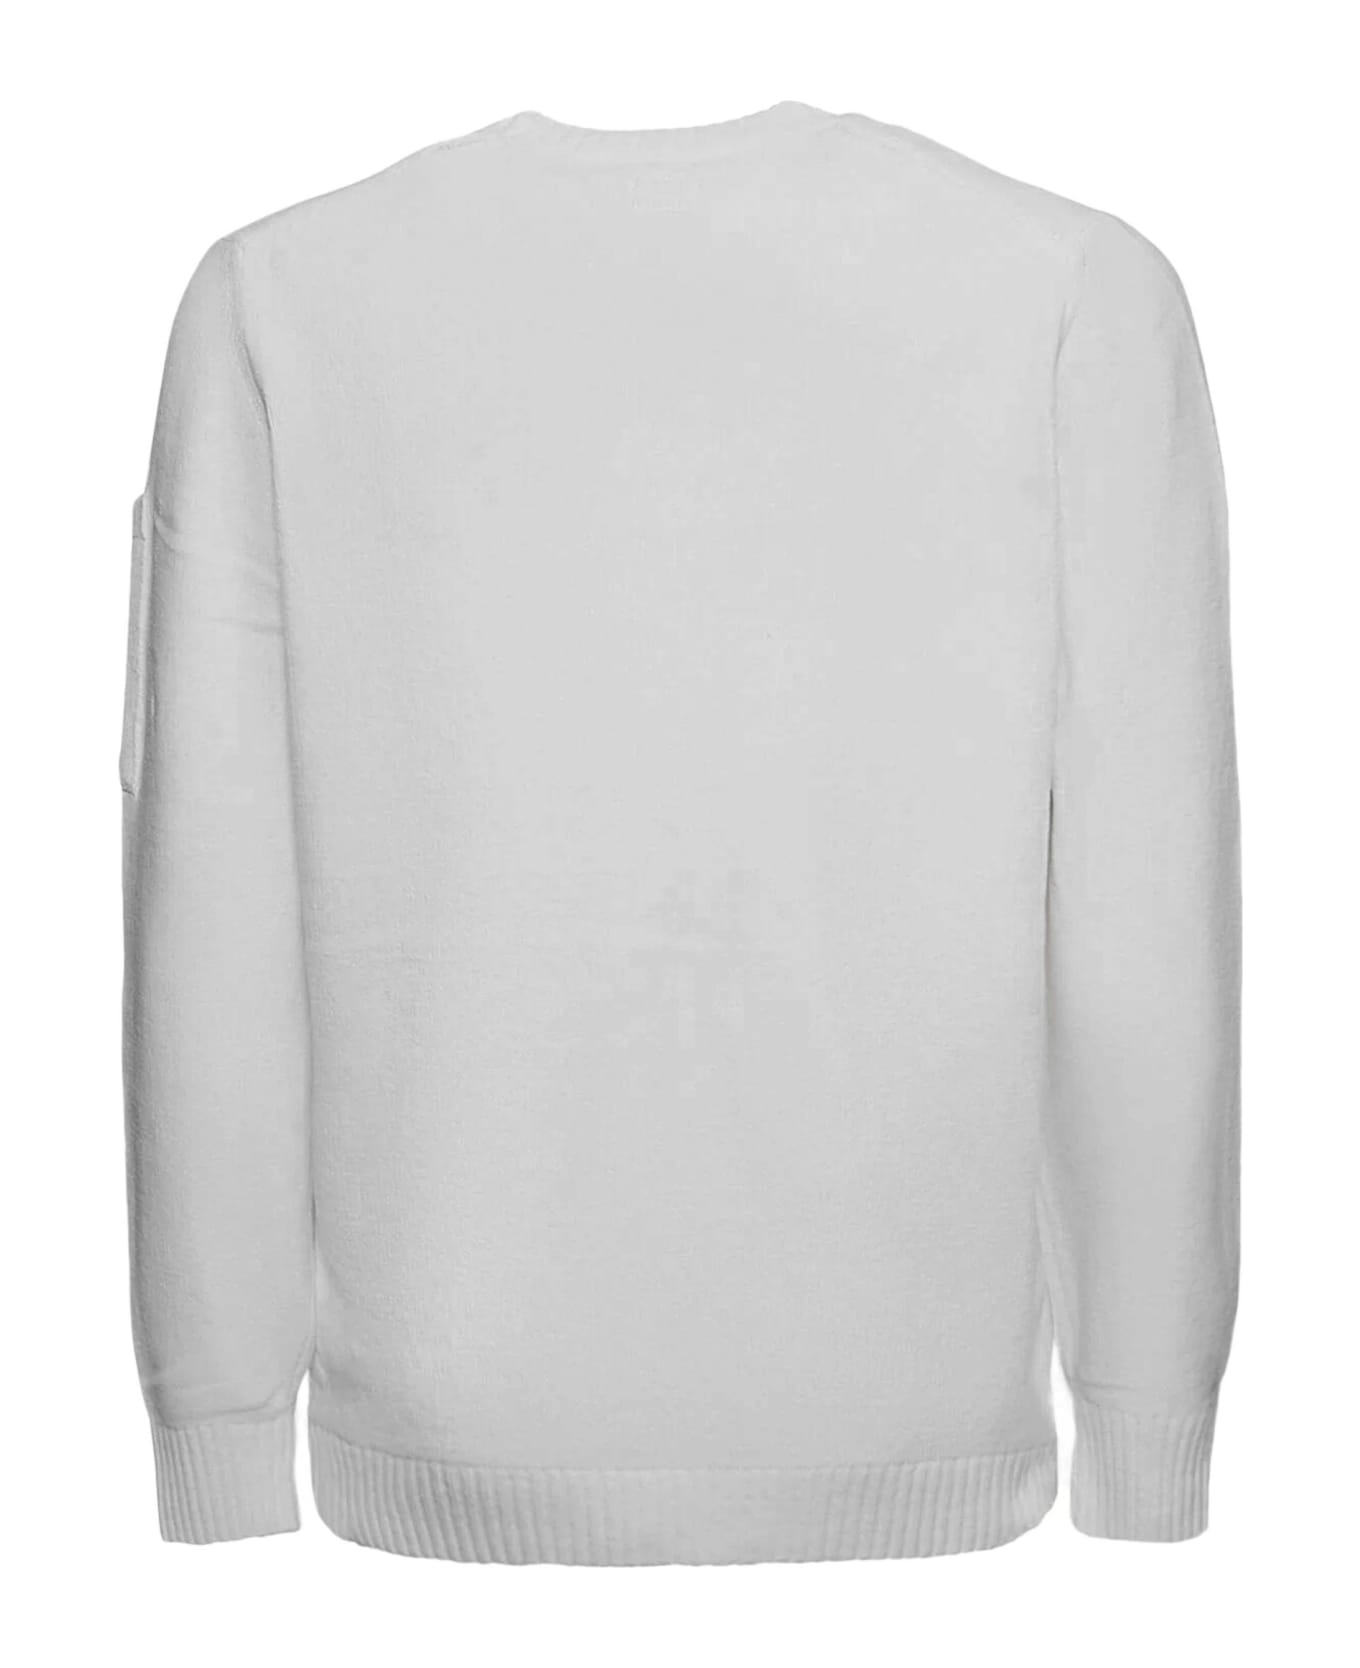 C.P. Company C.p.company Sweaters Grey - Grey ニットウェア